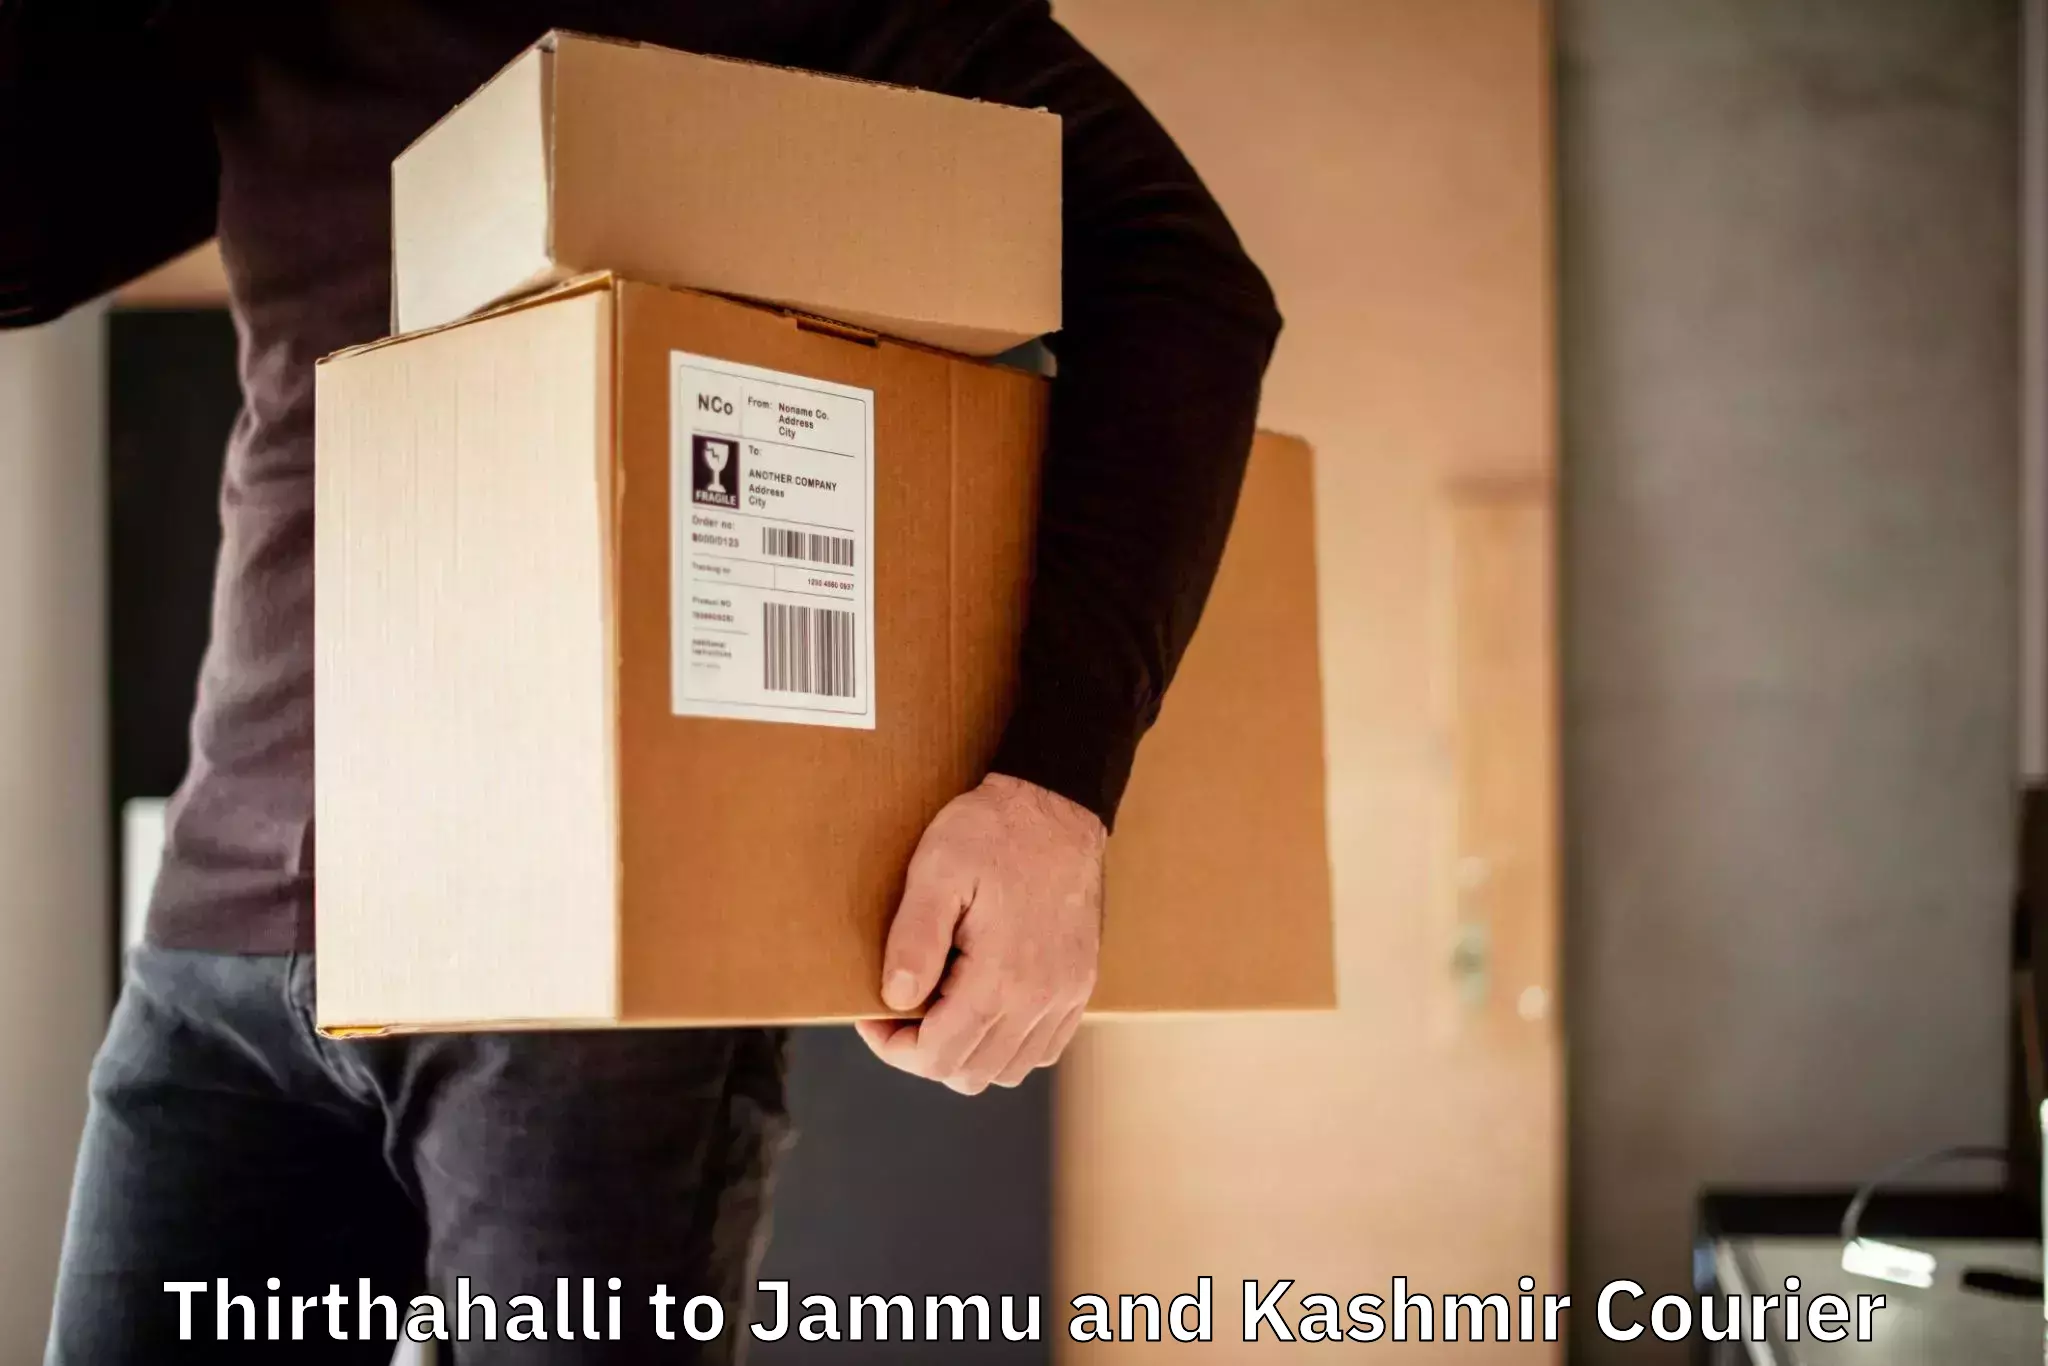 International courier rates Thirthahalli to Jammu